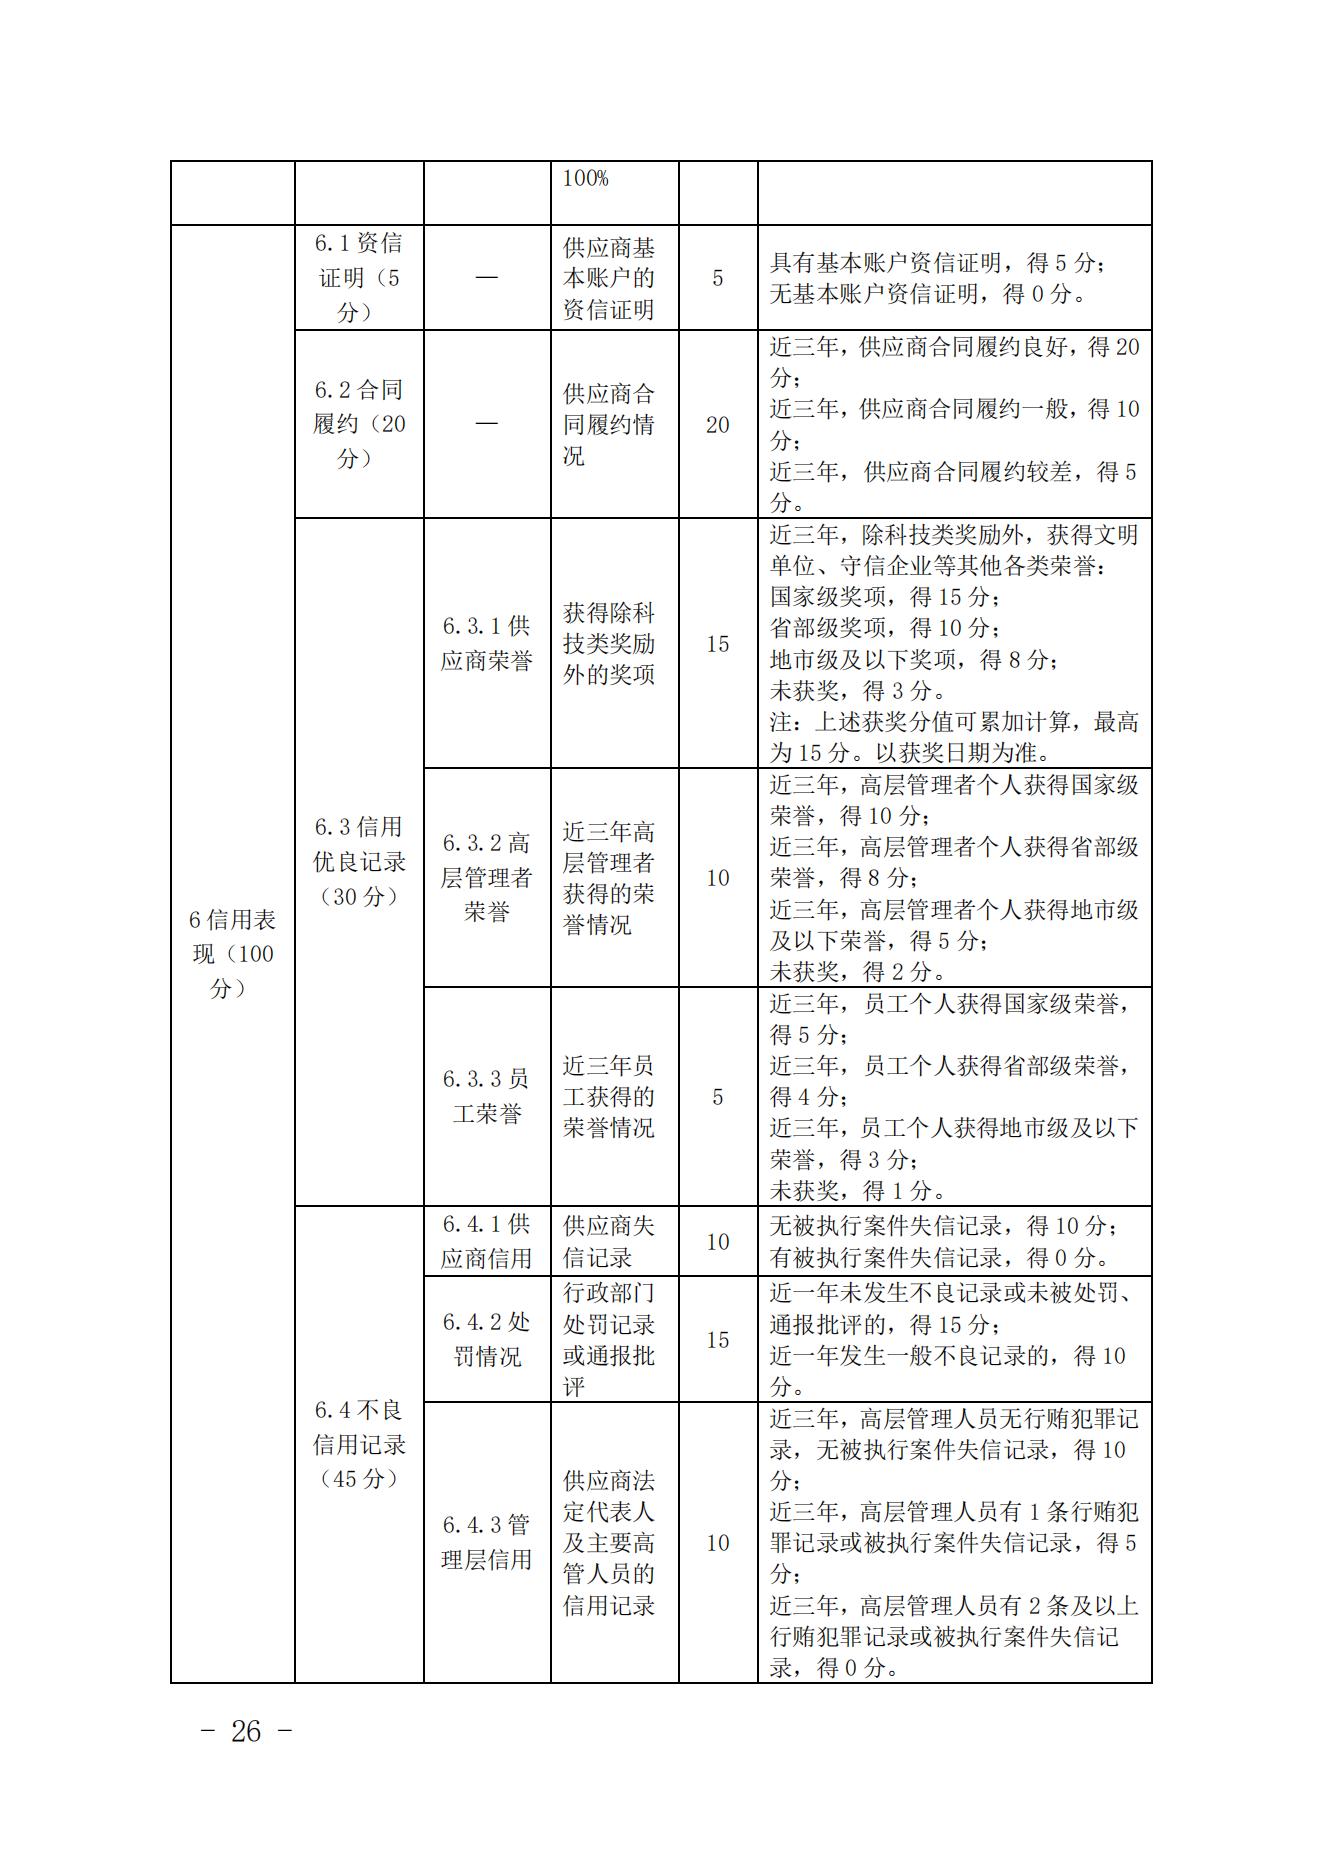 关于印发《中国核能行业协会核能行业供应商信用评价管理办法》《中国核能行业协会核能行业供应商信用评价规范》的通知_25.jpg